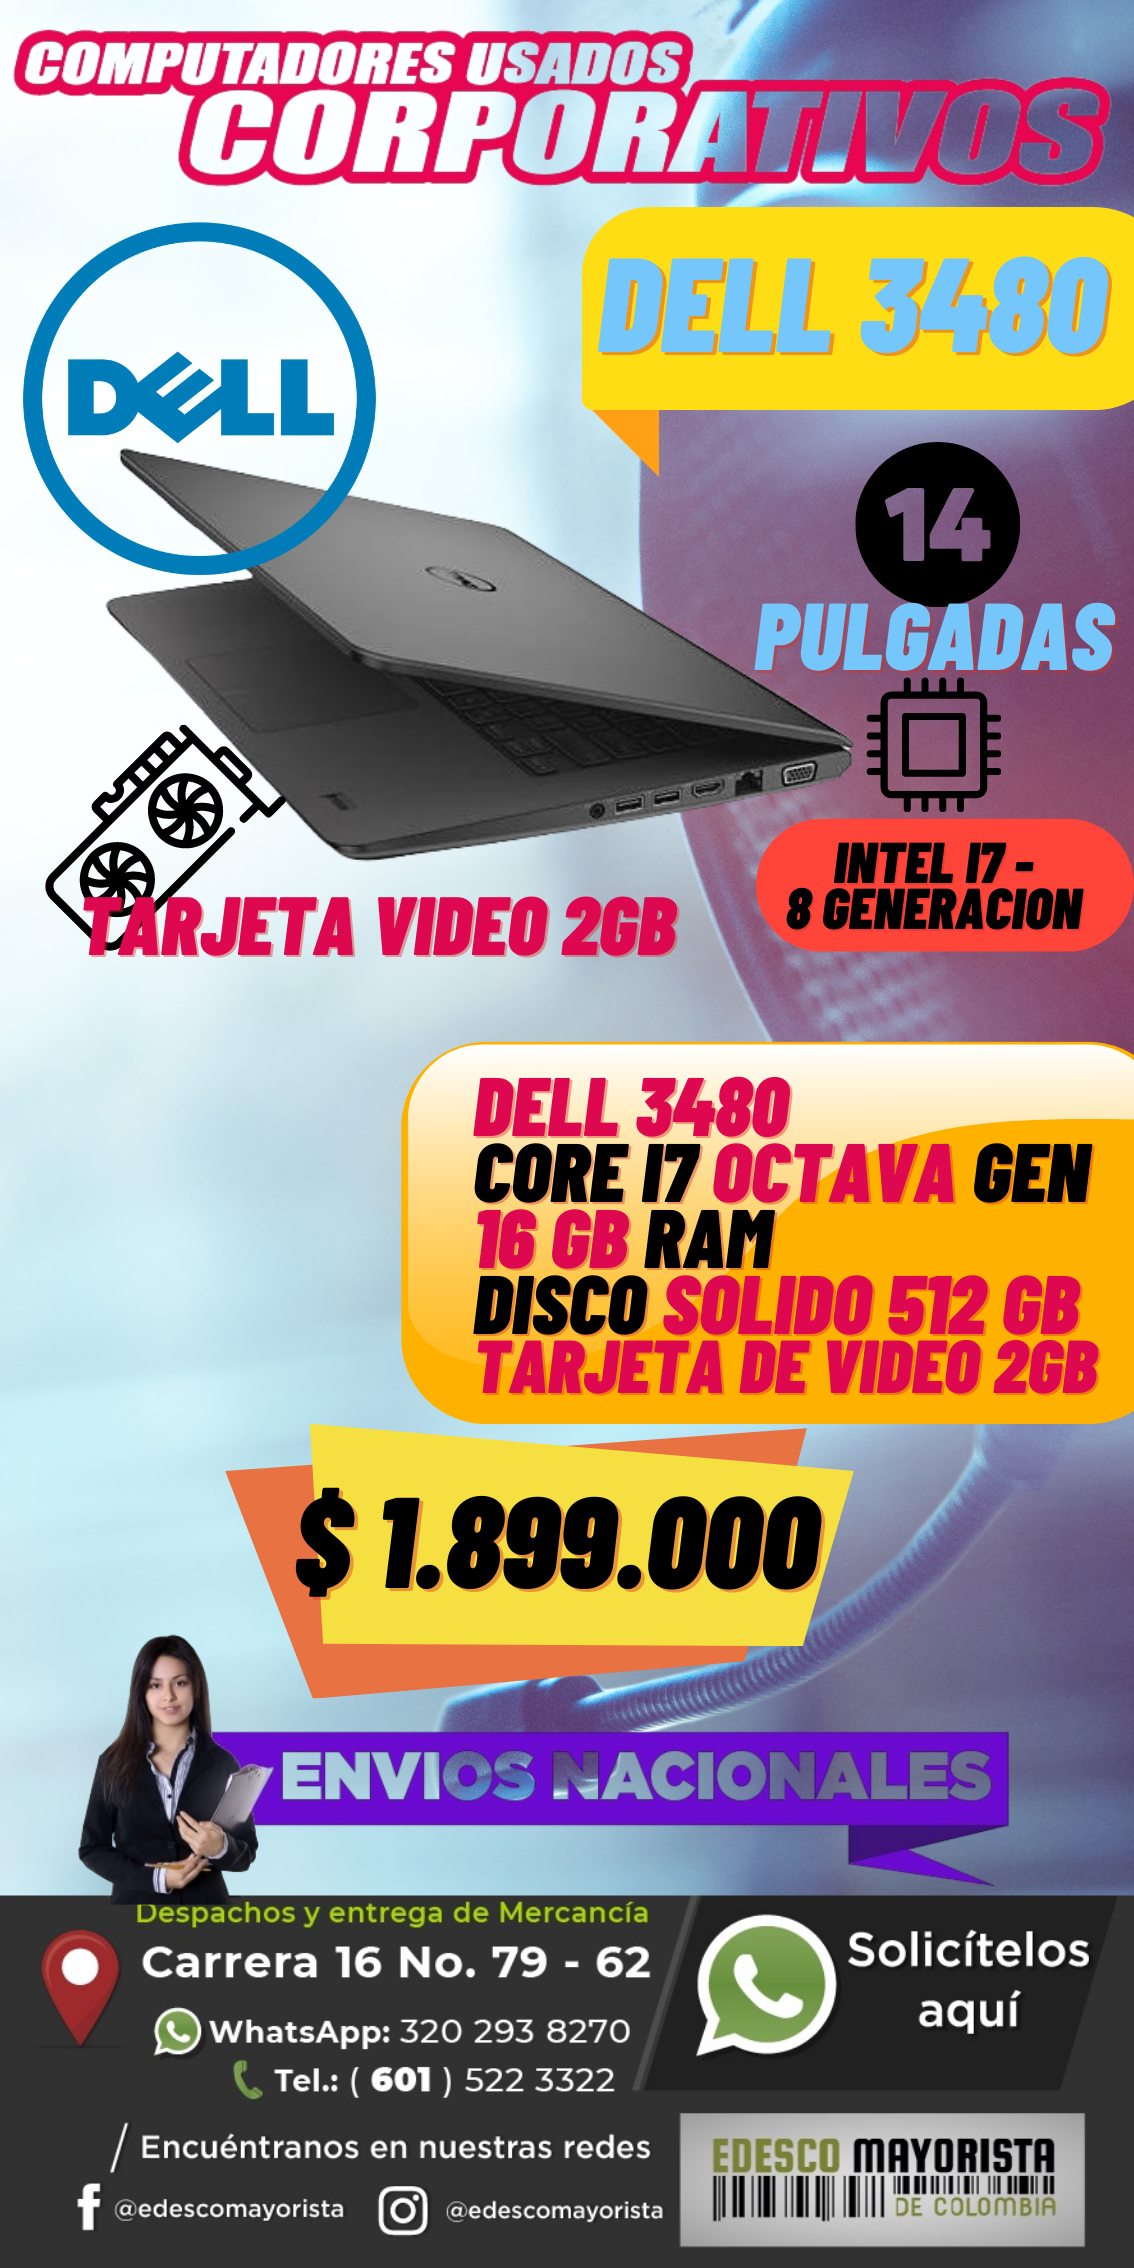 Dell 3480 con tarjeta de video 14 PULG BATERIA NUEVA